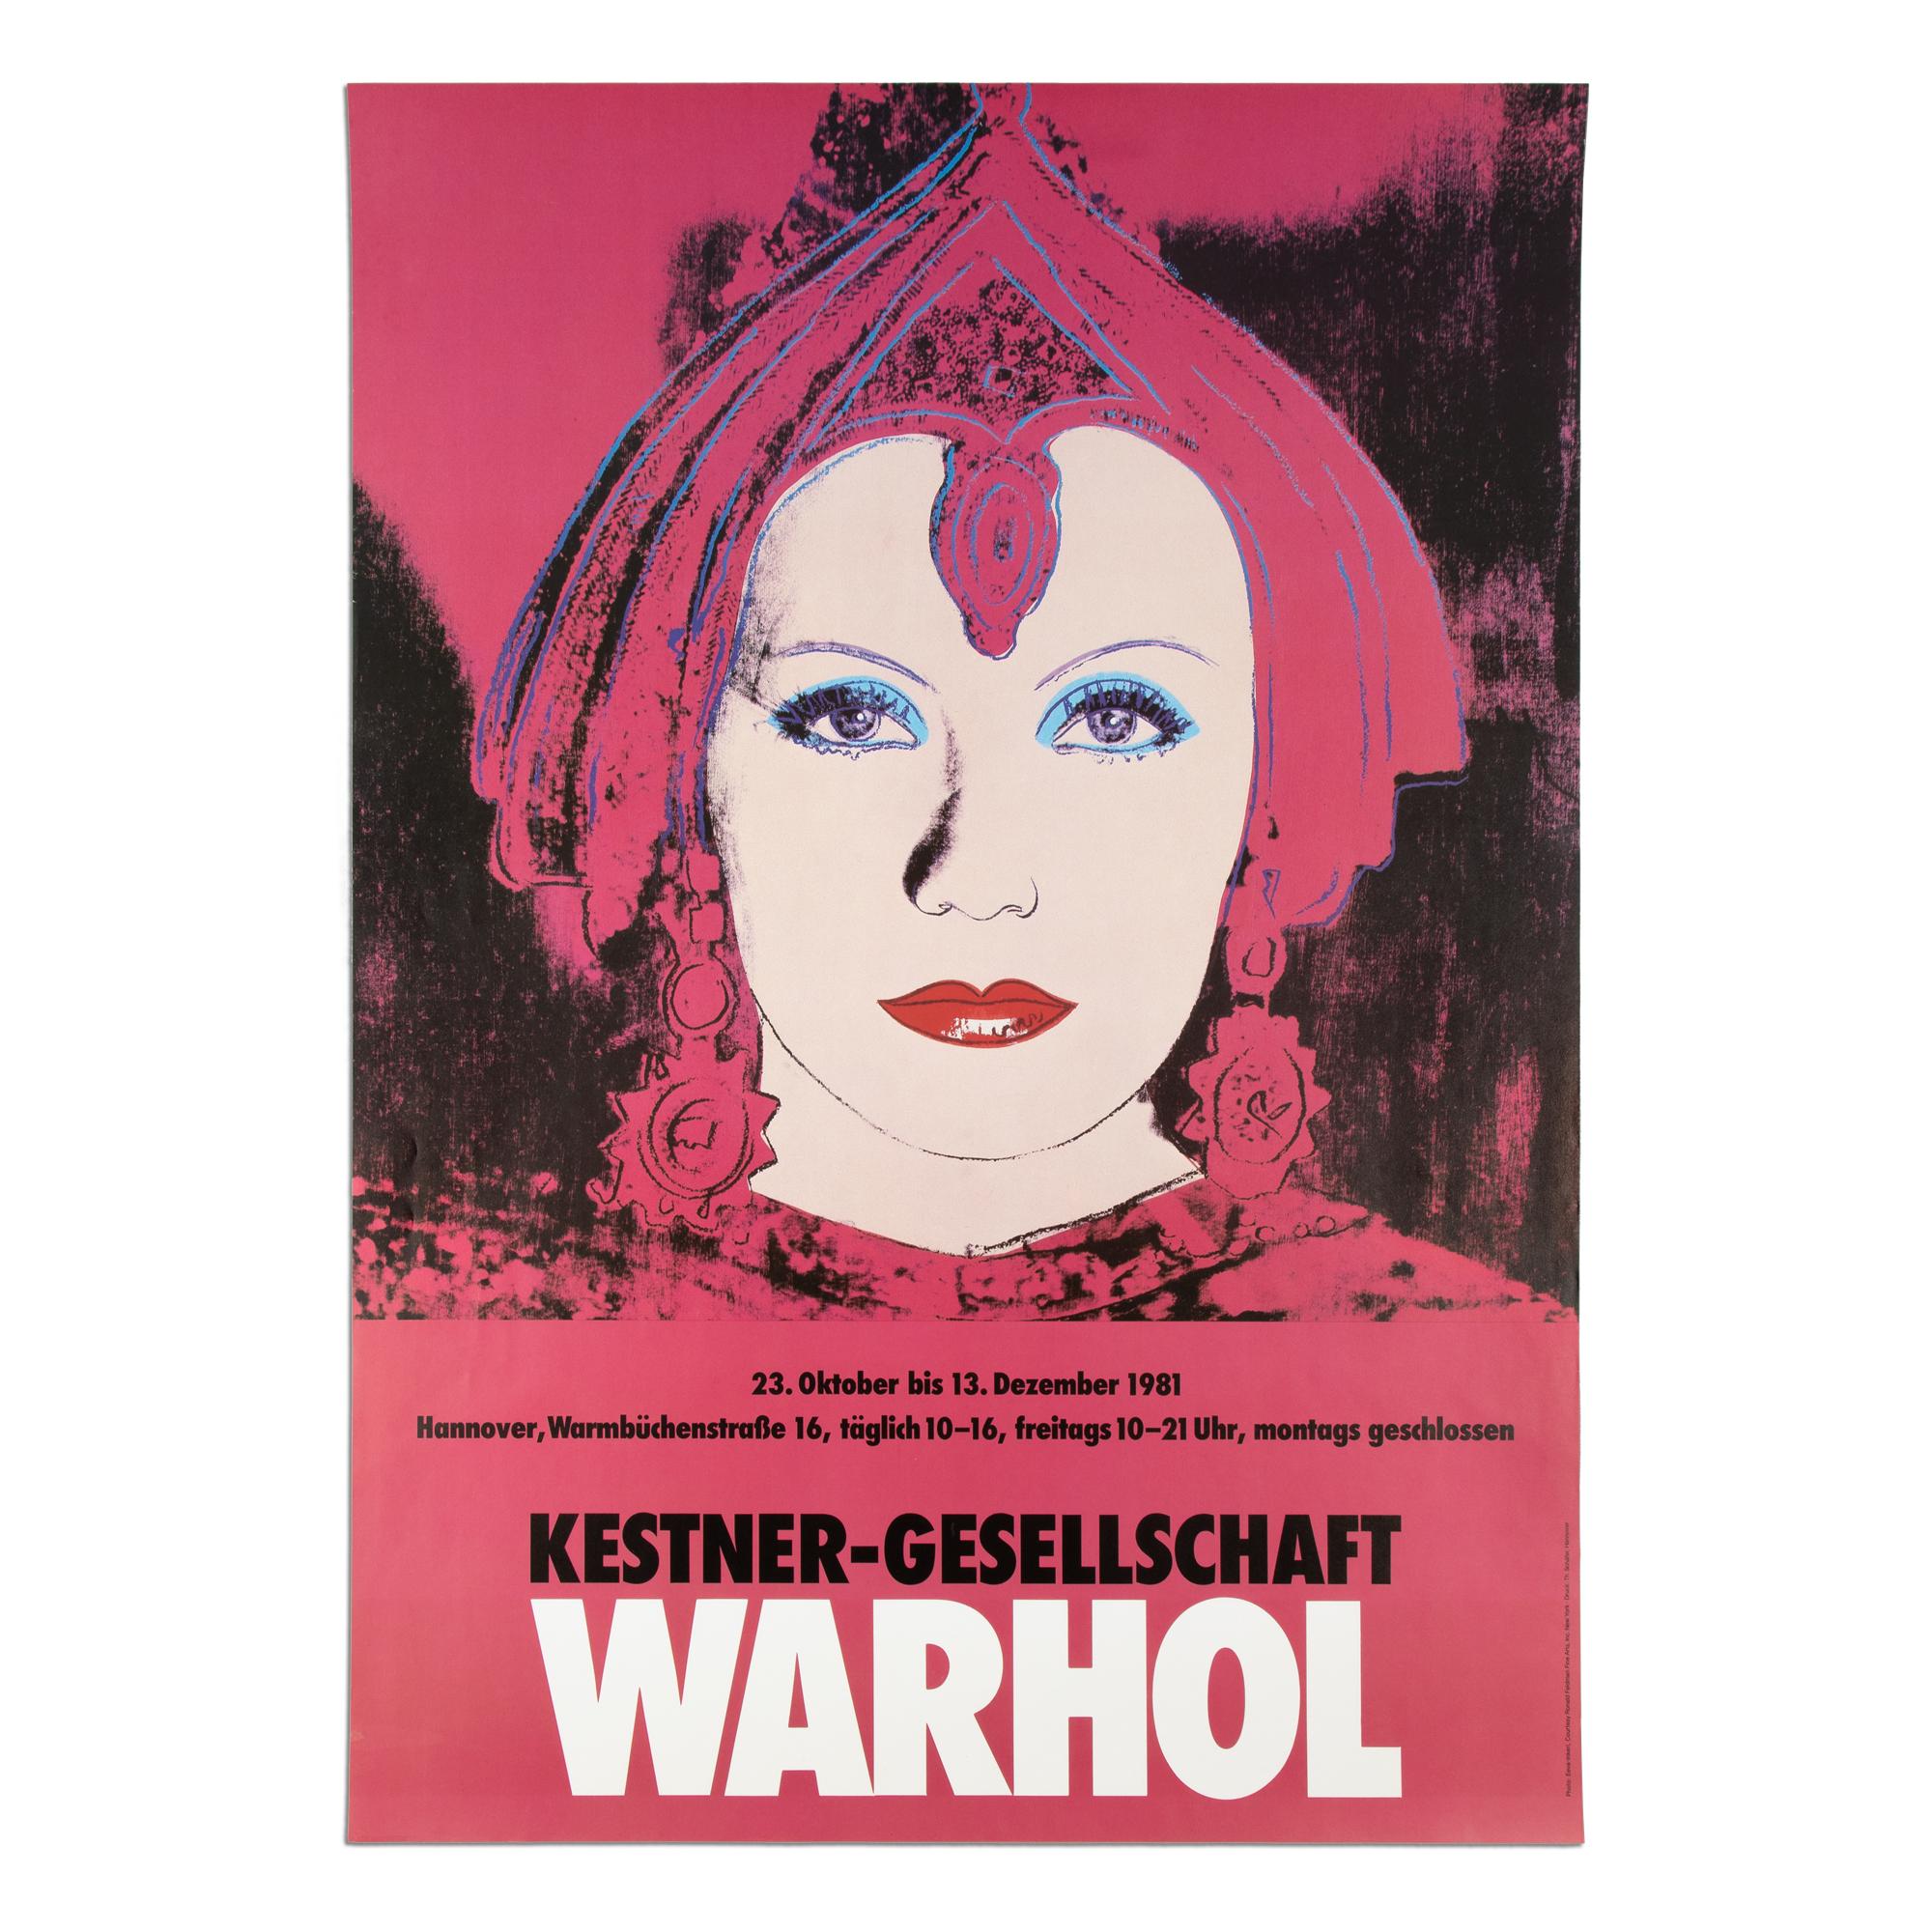 Portrait Print (after) Andy Warhol - Andy Warhol, L'étoile - Kestner-Gesellschaft, affiche d'exposition, impression Pop Art